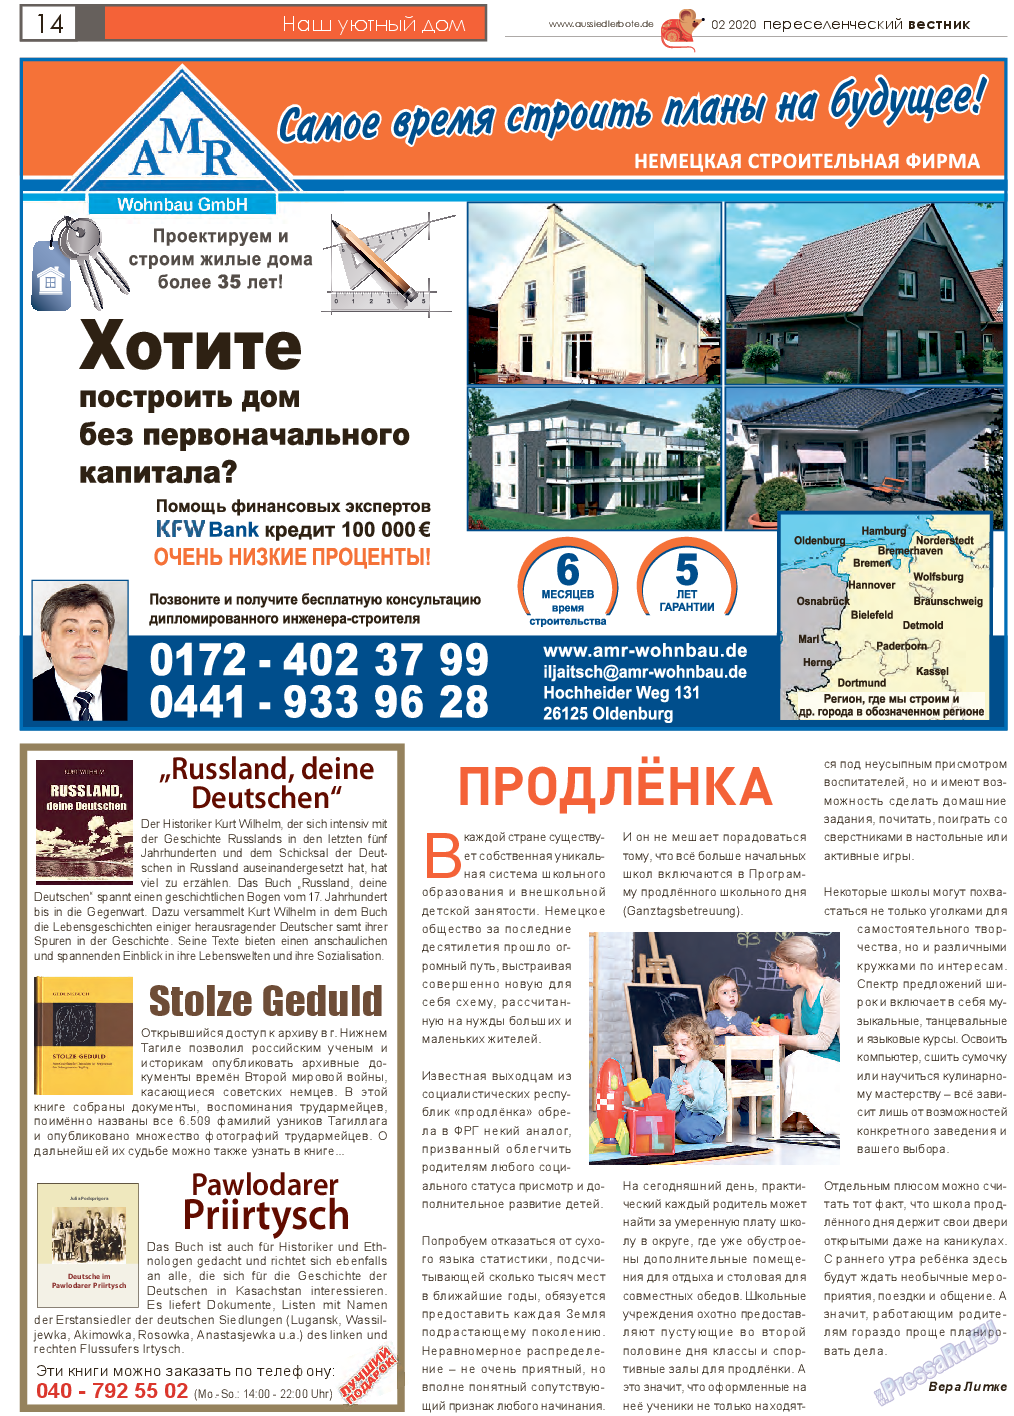 Переселенческий вестник, газета. 2020 №2 стр.14